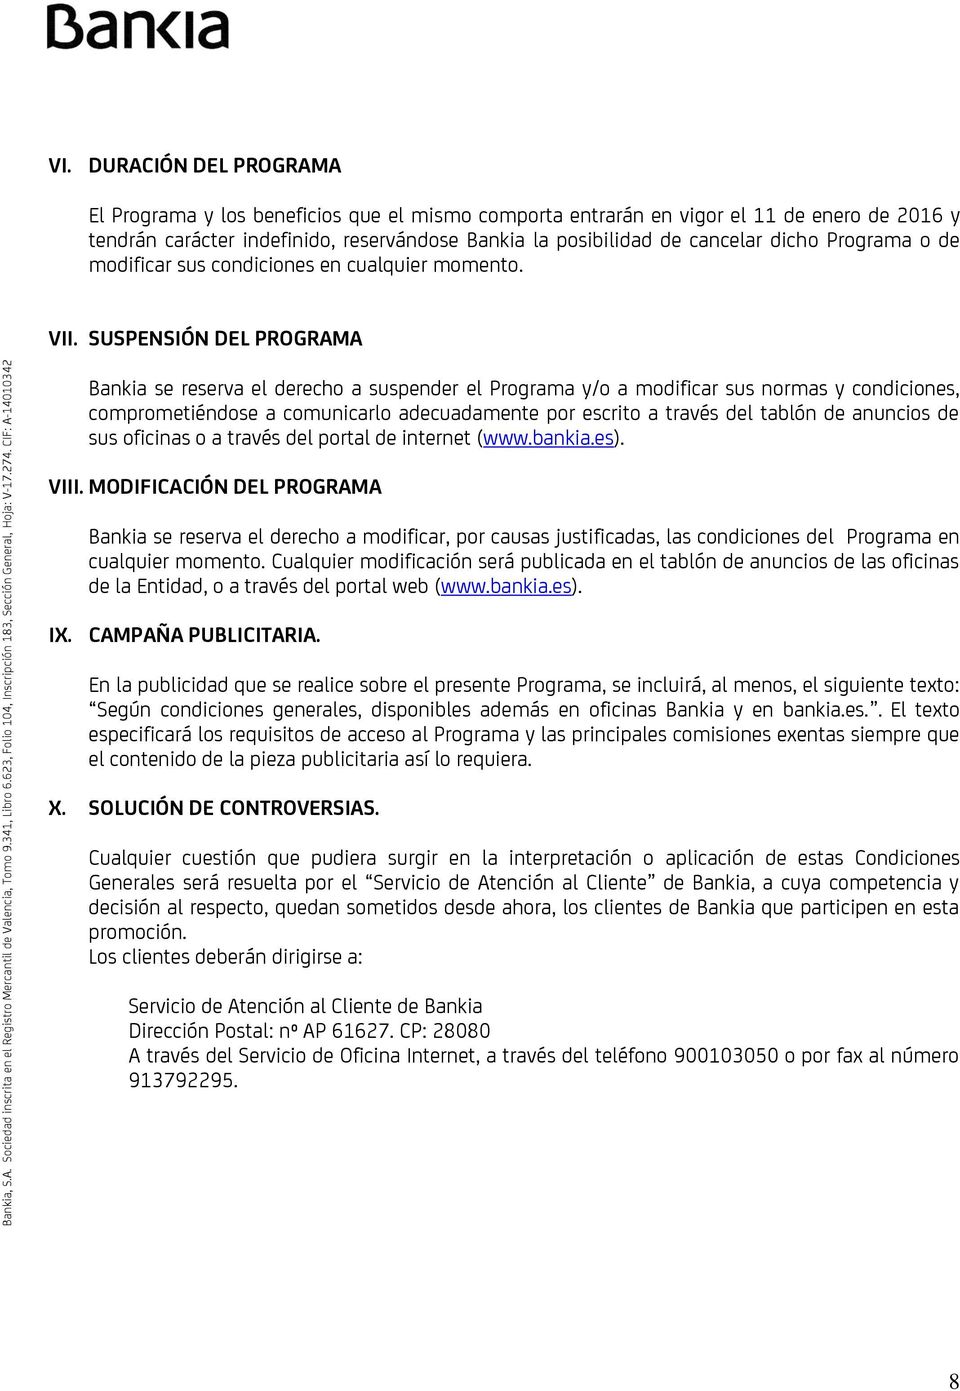 SUSPENSIÓN DEL PROGRAMA Bankia se reserva el derecho a suspender el Programa y/o a modificar sus normas y condiciones, comprometiéndose a comunicarlo adecuadamente por escrito a través del tablón de